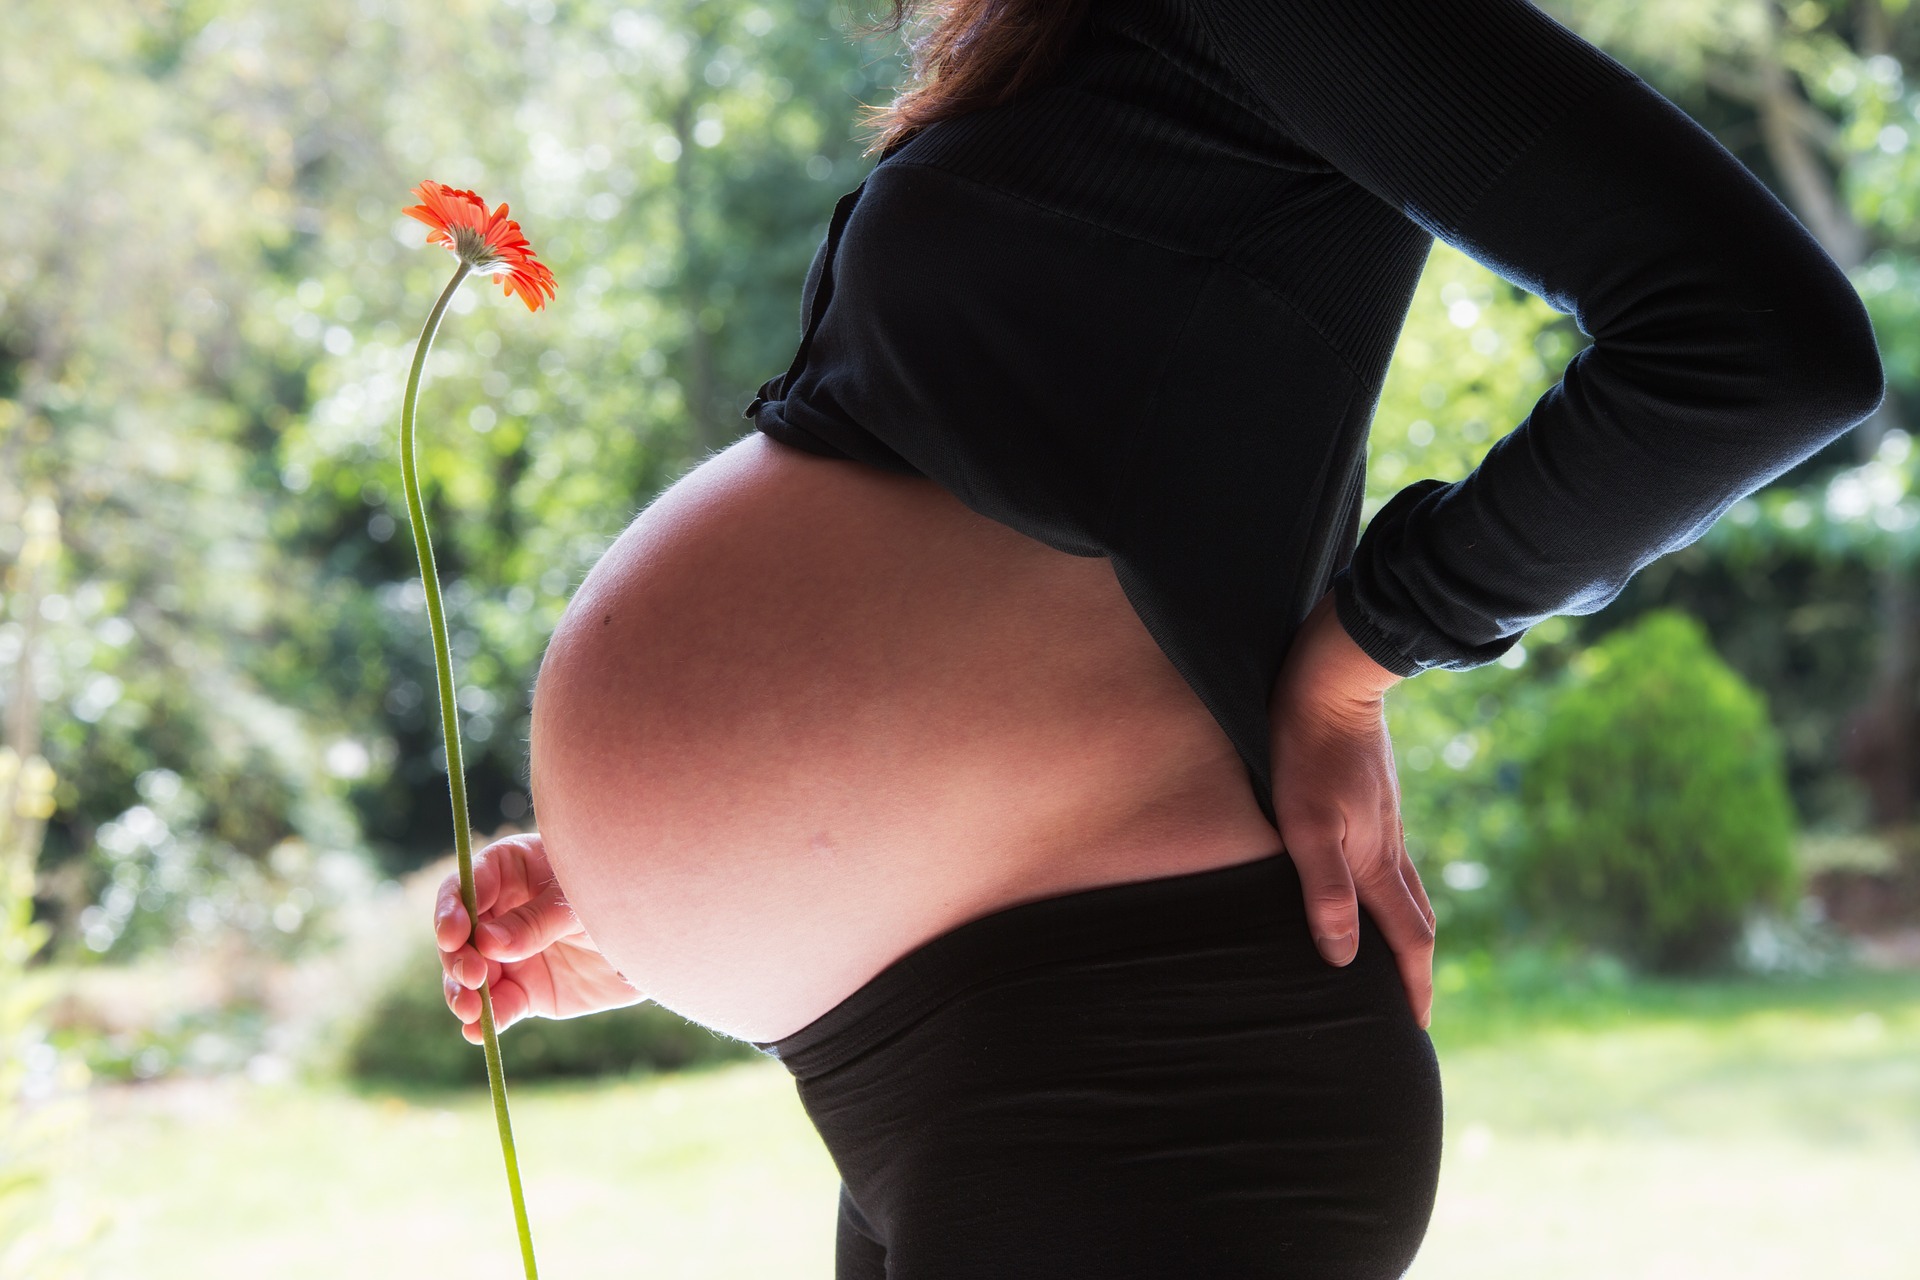 11 tydzień ciąży,dziecko, przyszła mama,kwiat,widoczny brzuszek,licencja CC-BY-SA-4